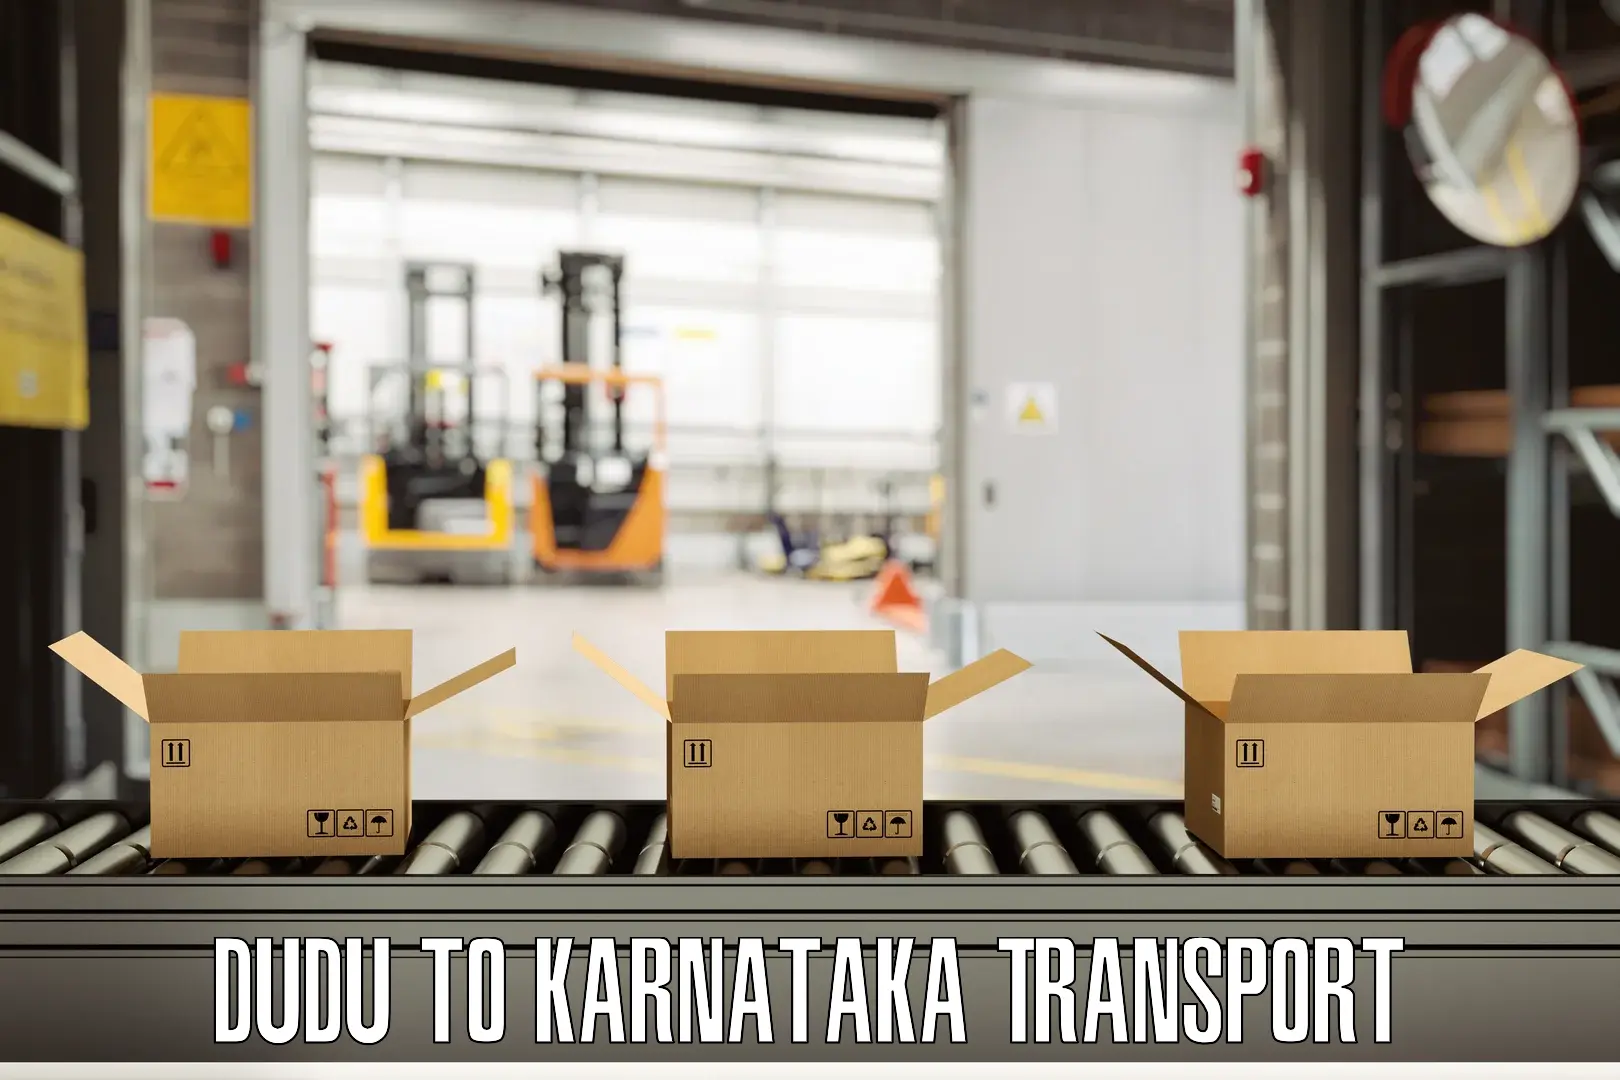 Online transport booking Dudu to Karnataka